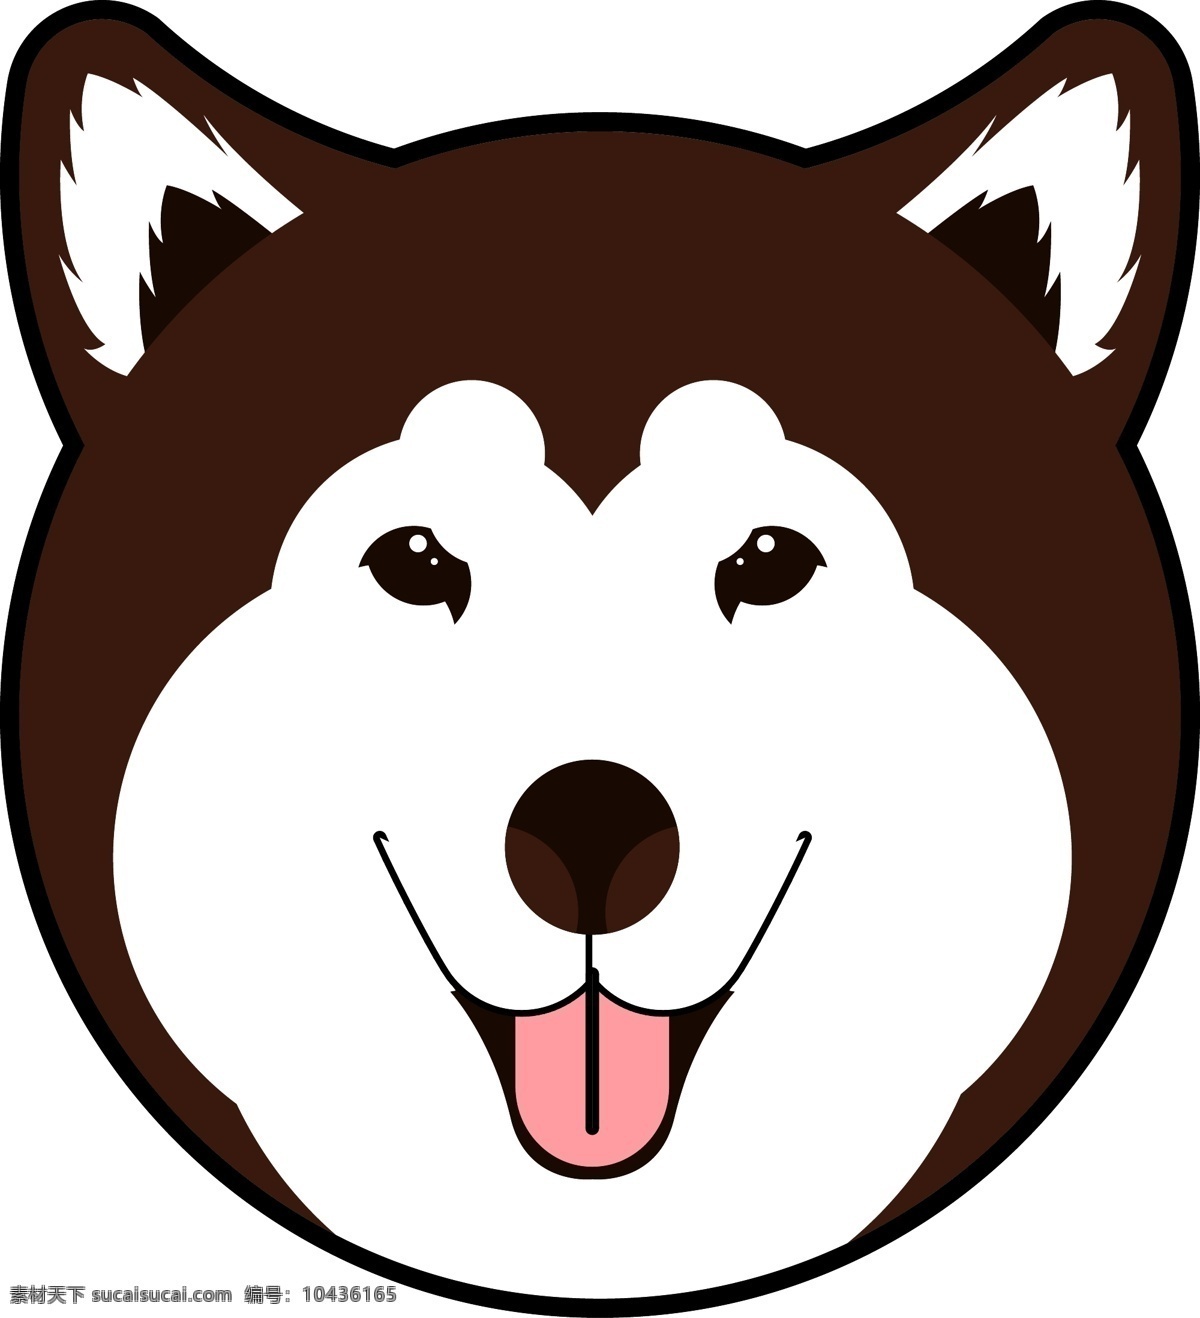 阿拉斯加图标 狗 阿拉斯加 黑白卡通 动物 哈士奇 动物图标 图标 可爱 卡通动物 头像